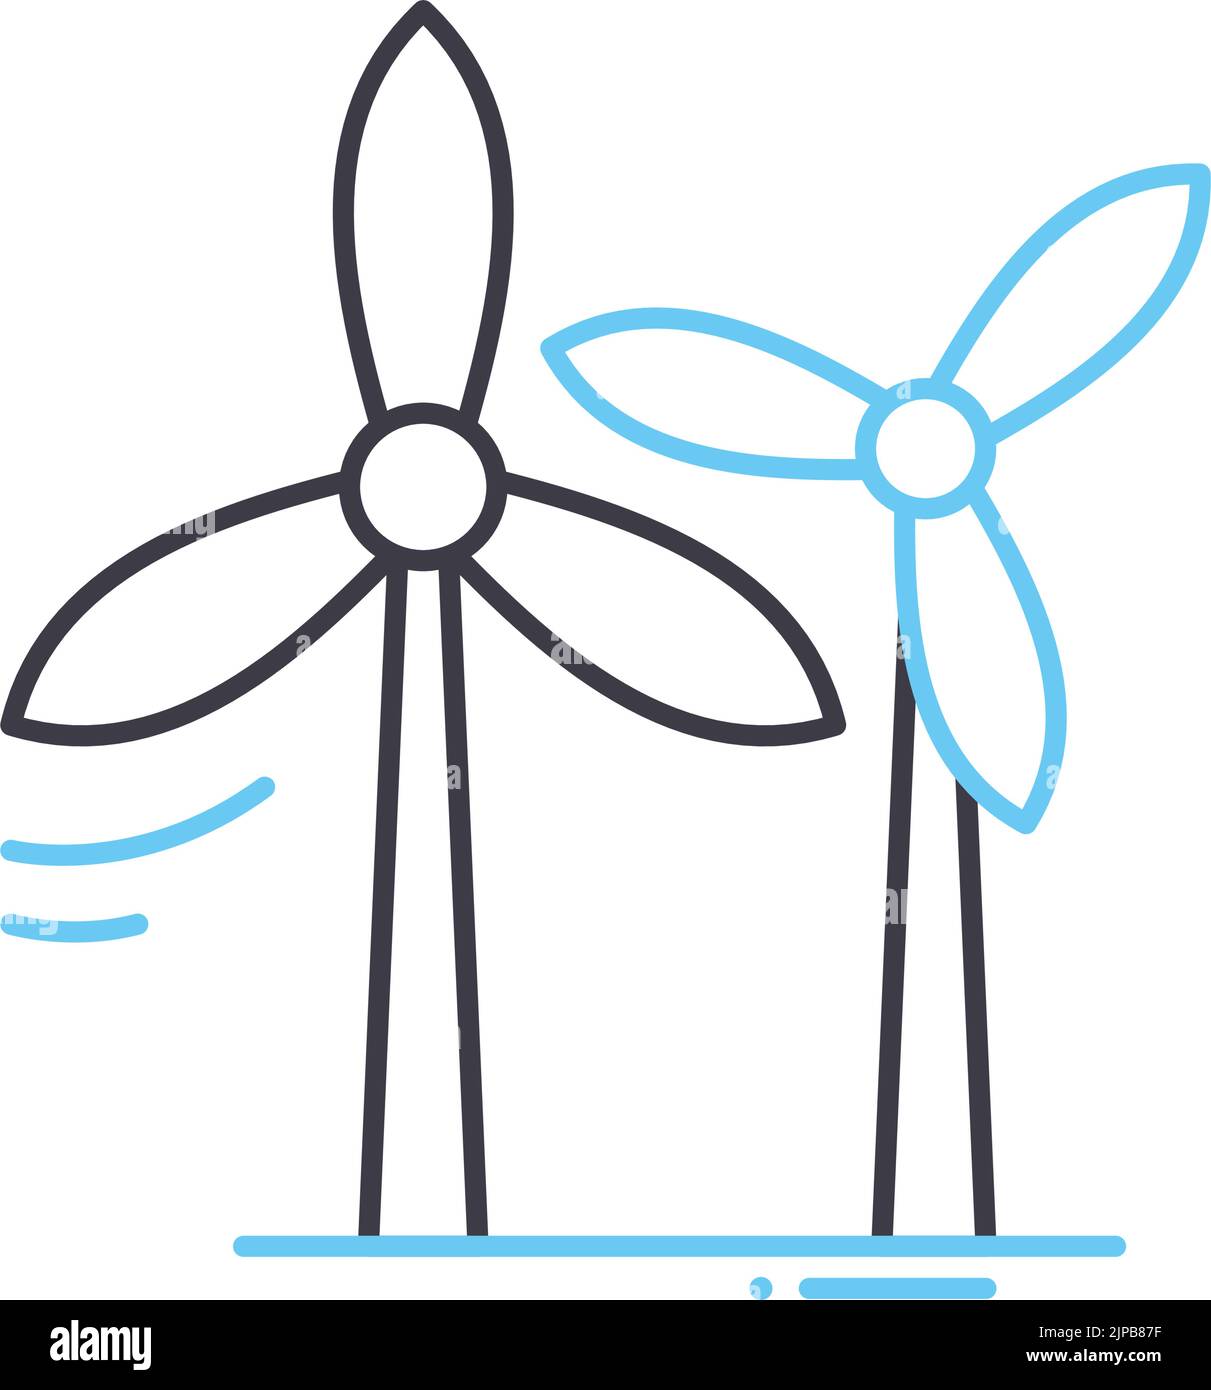 icona della linea di alimentazione del vento, simbolo di contorno, illustrazione vettoriale, segnale concettuale Illustrazione Vettoriale